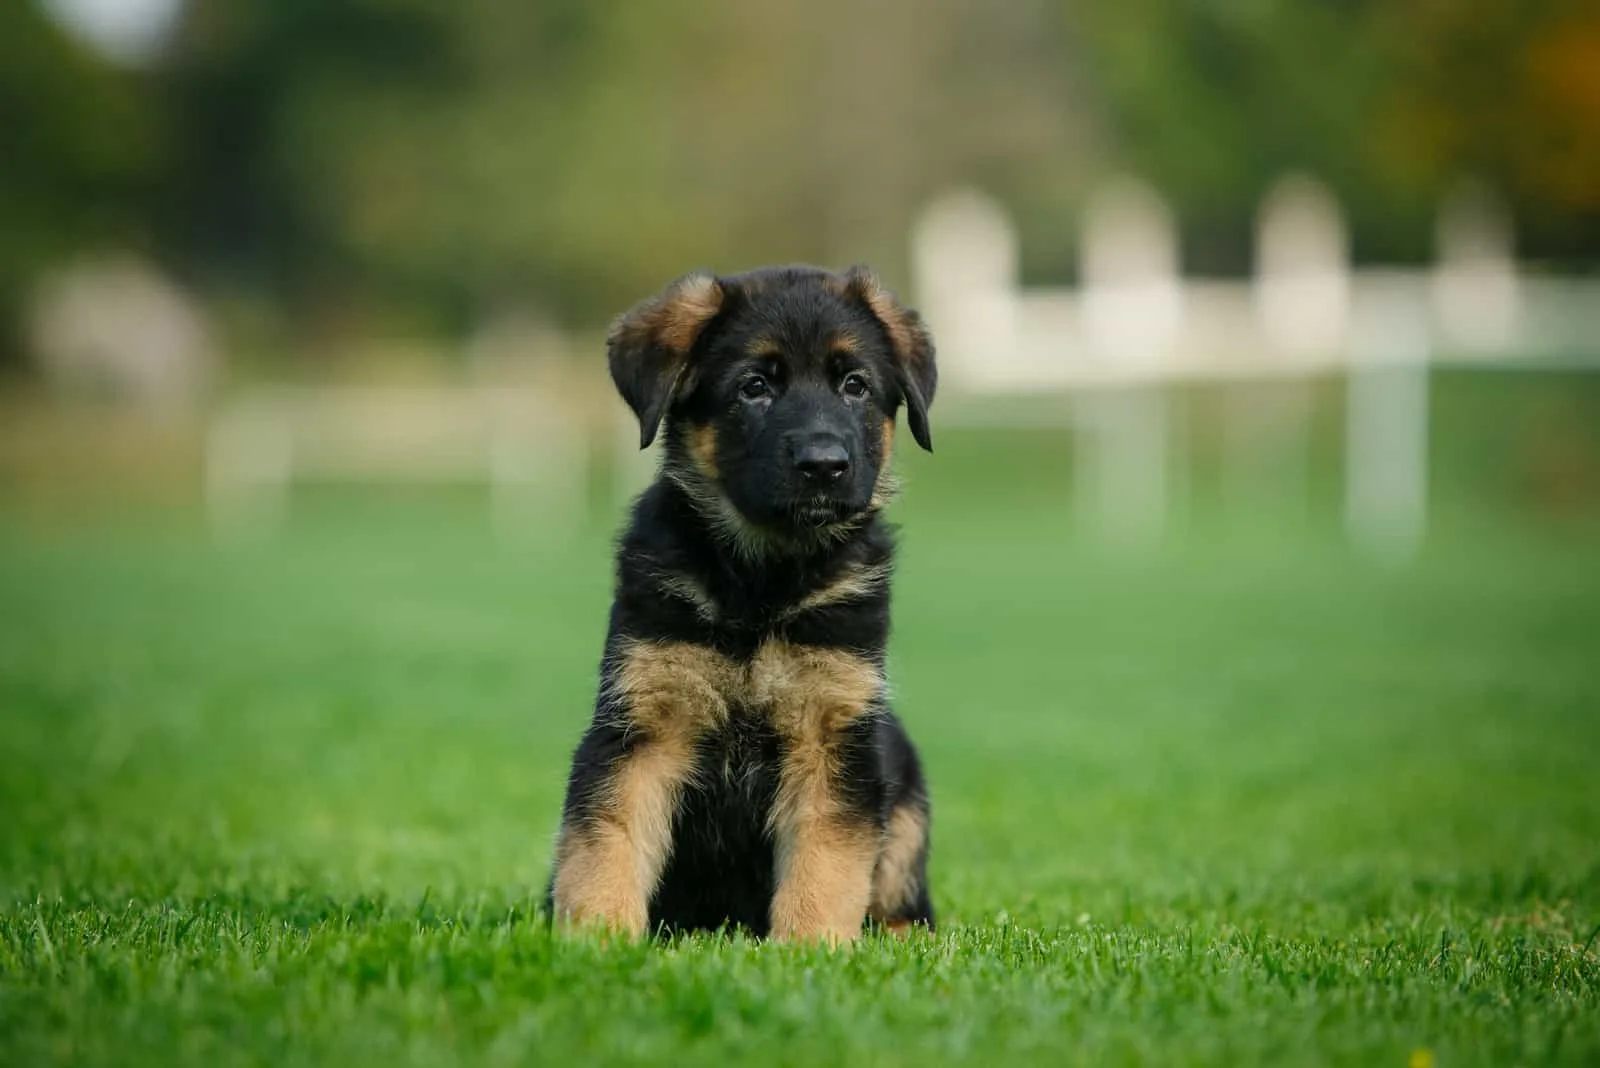 cute German Shepherd puppy in the park on a green lawn